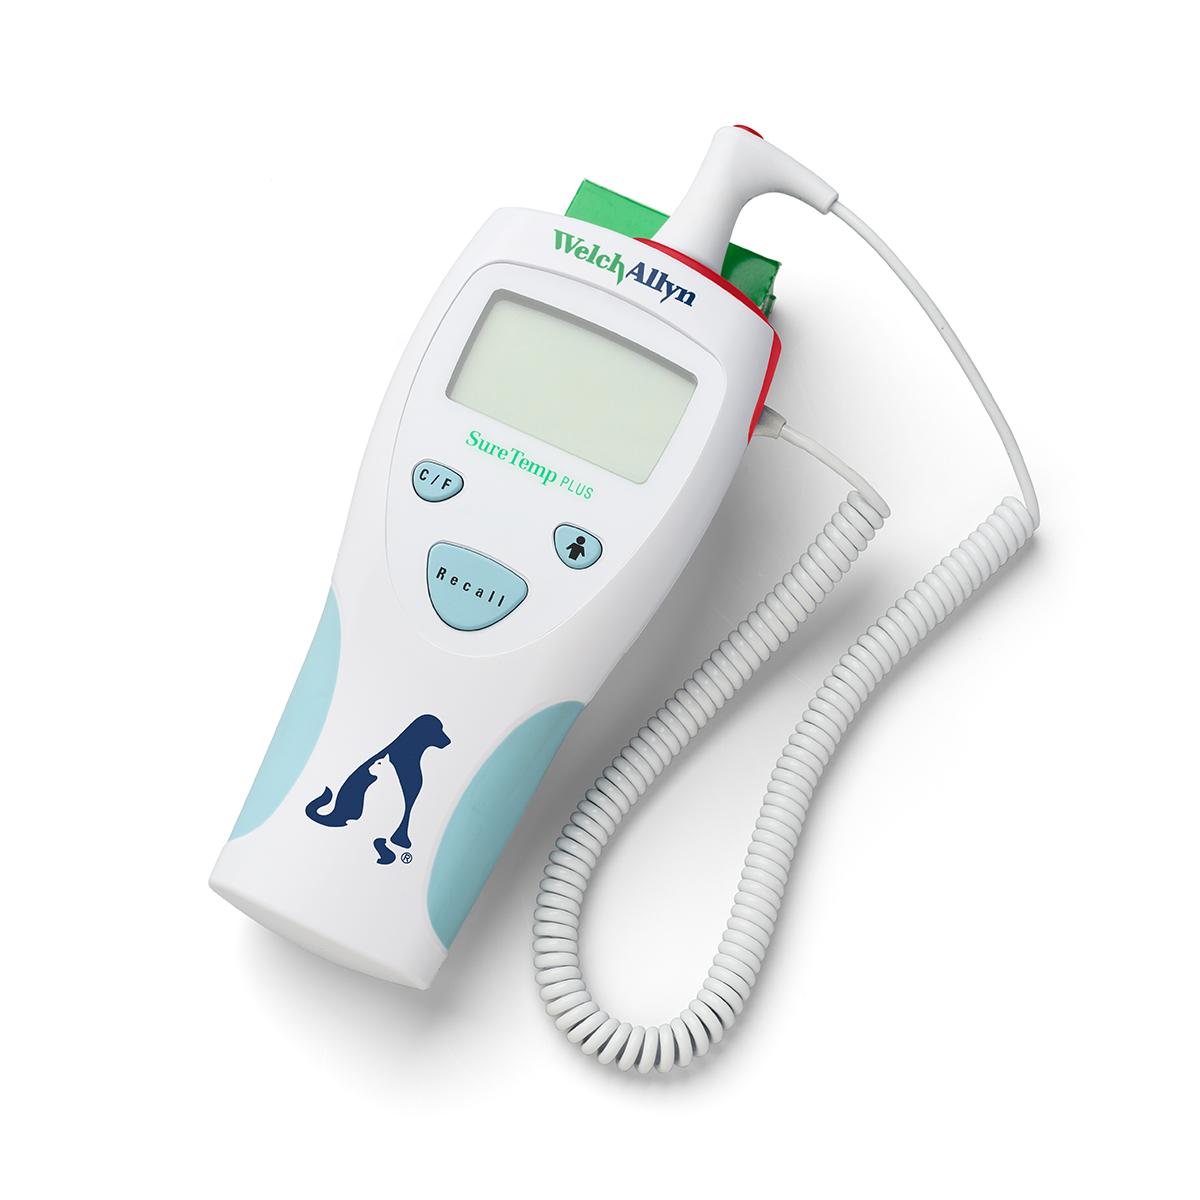 Welch Allyn SureTemp Plus 690 elektronisk termometer för veterinärmedicin